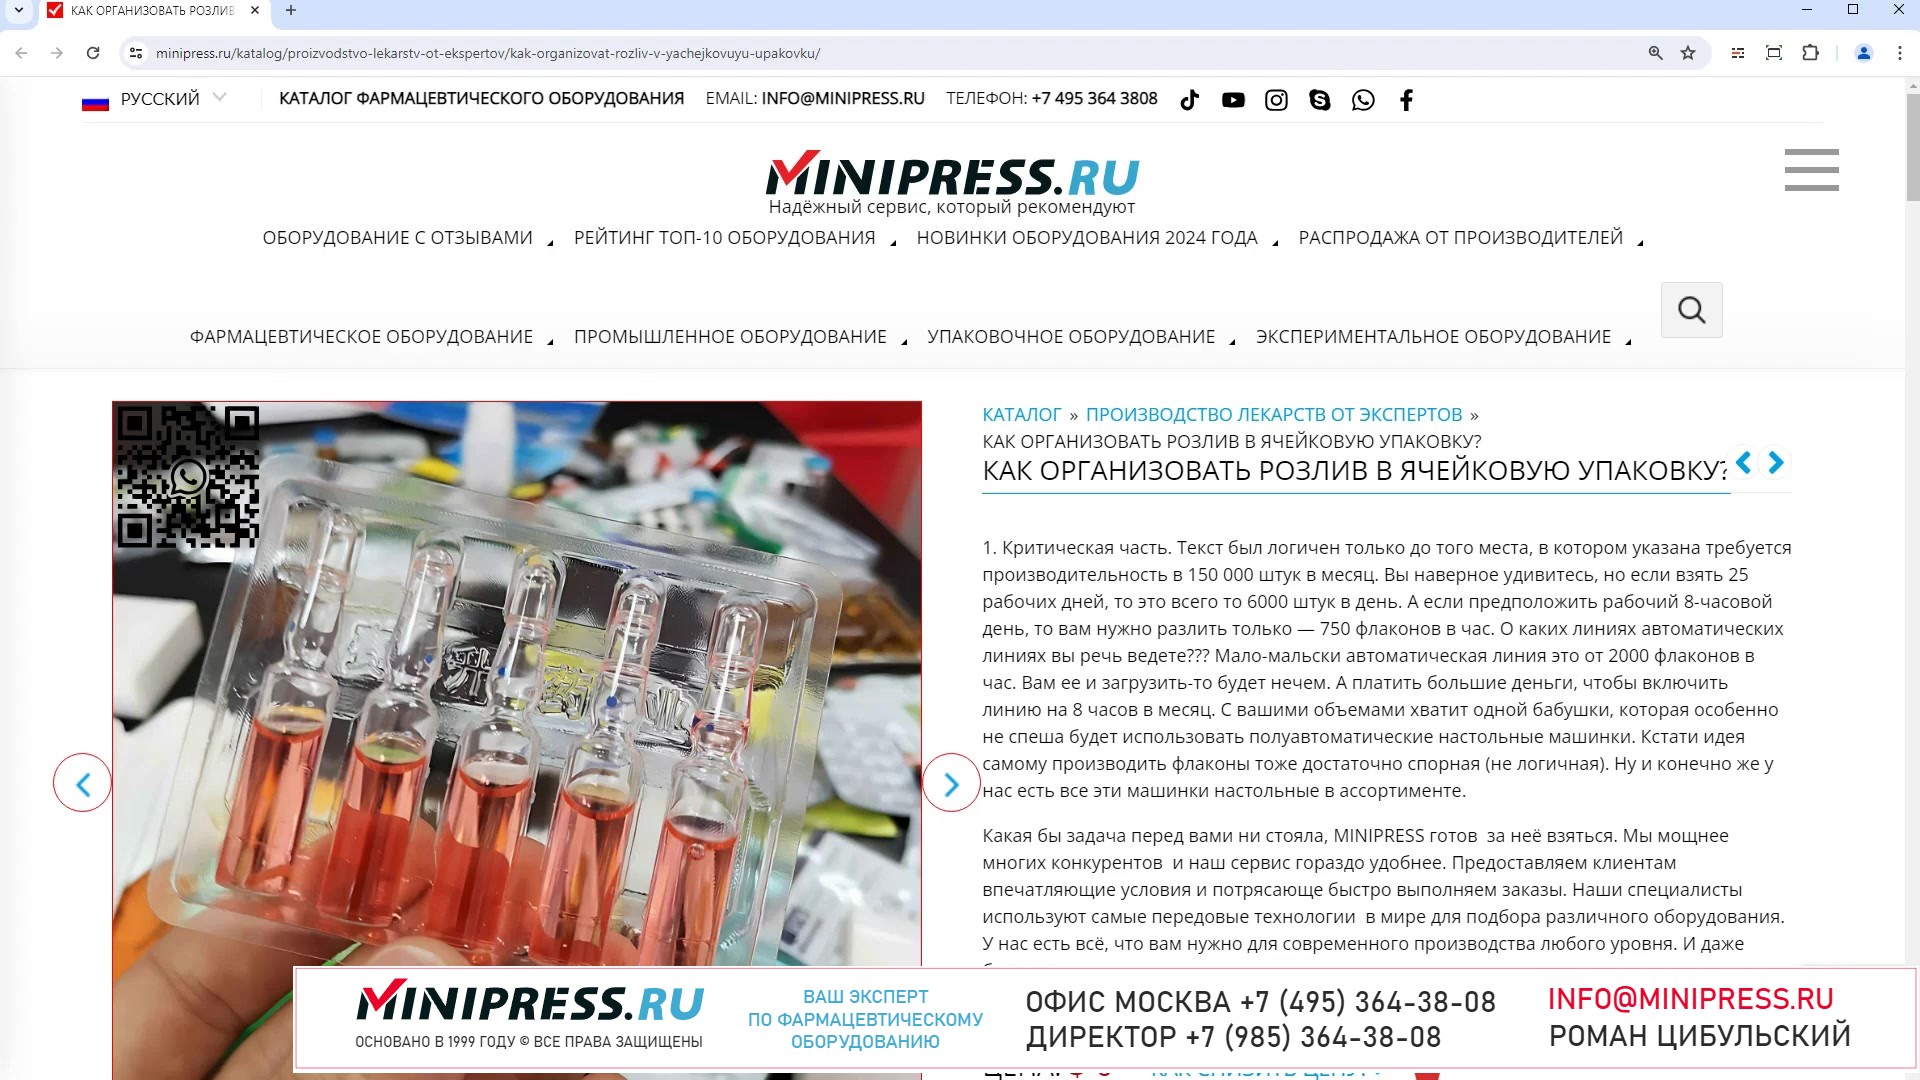 Minipress.ru Как организовать розлив в ячейковую упаковку